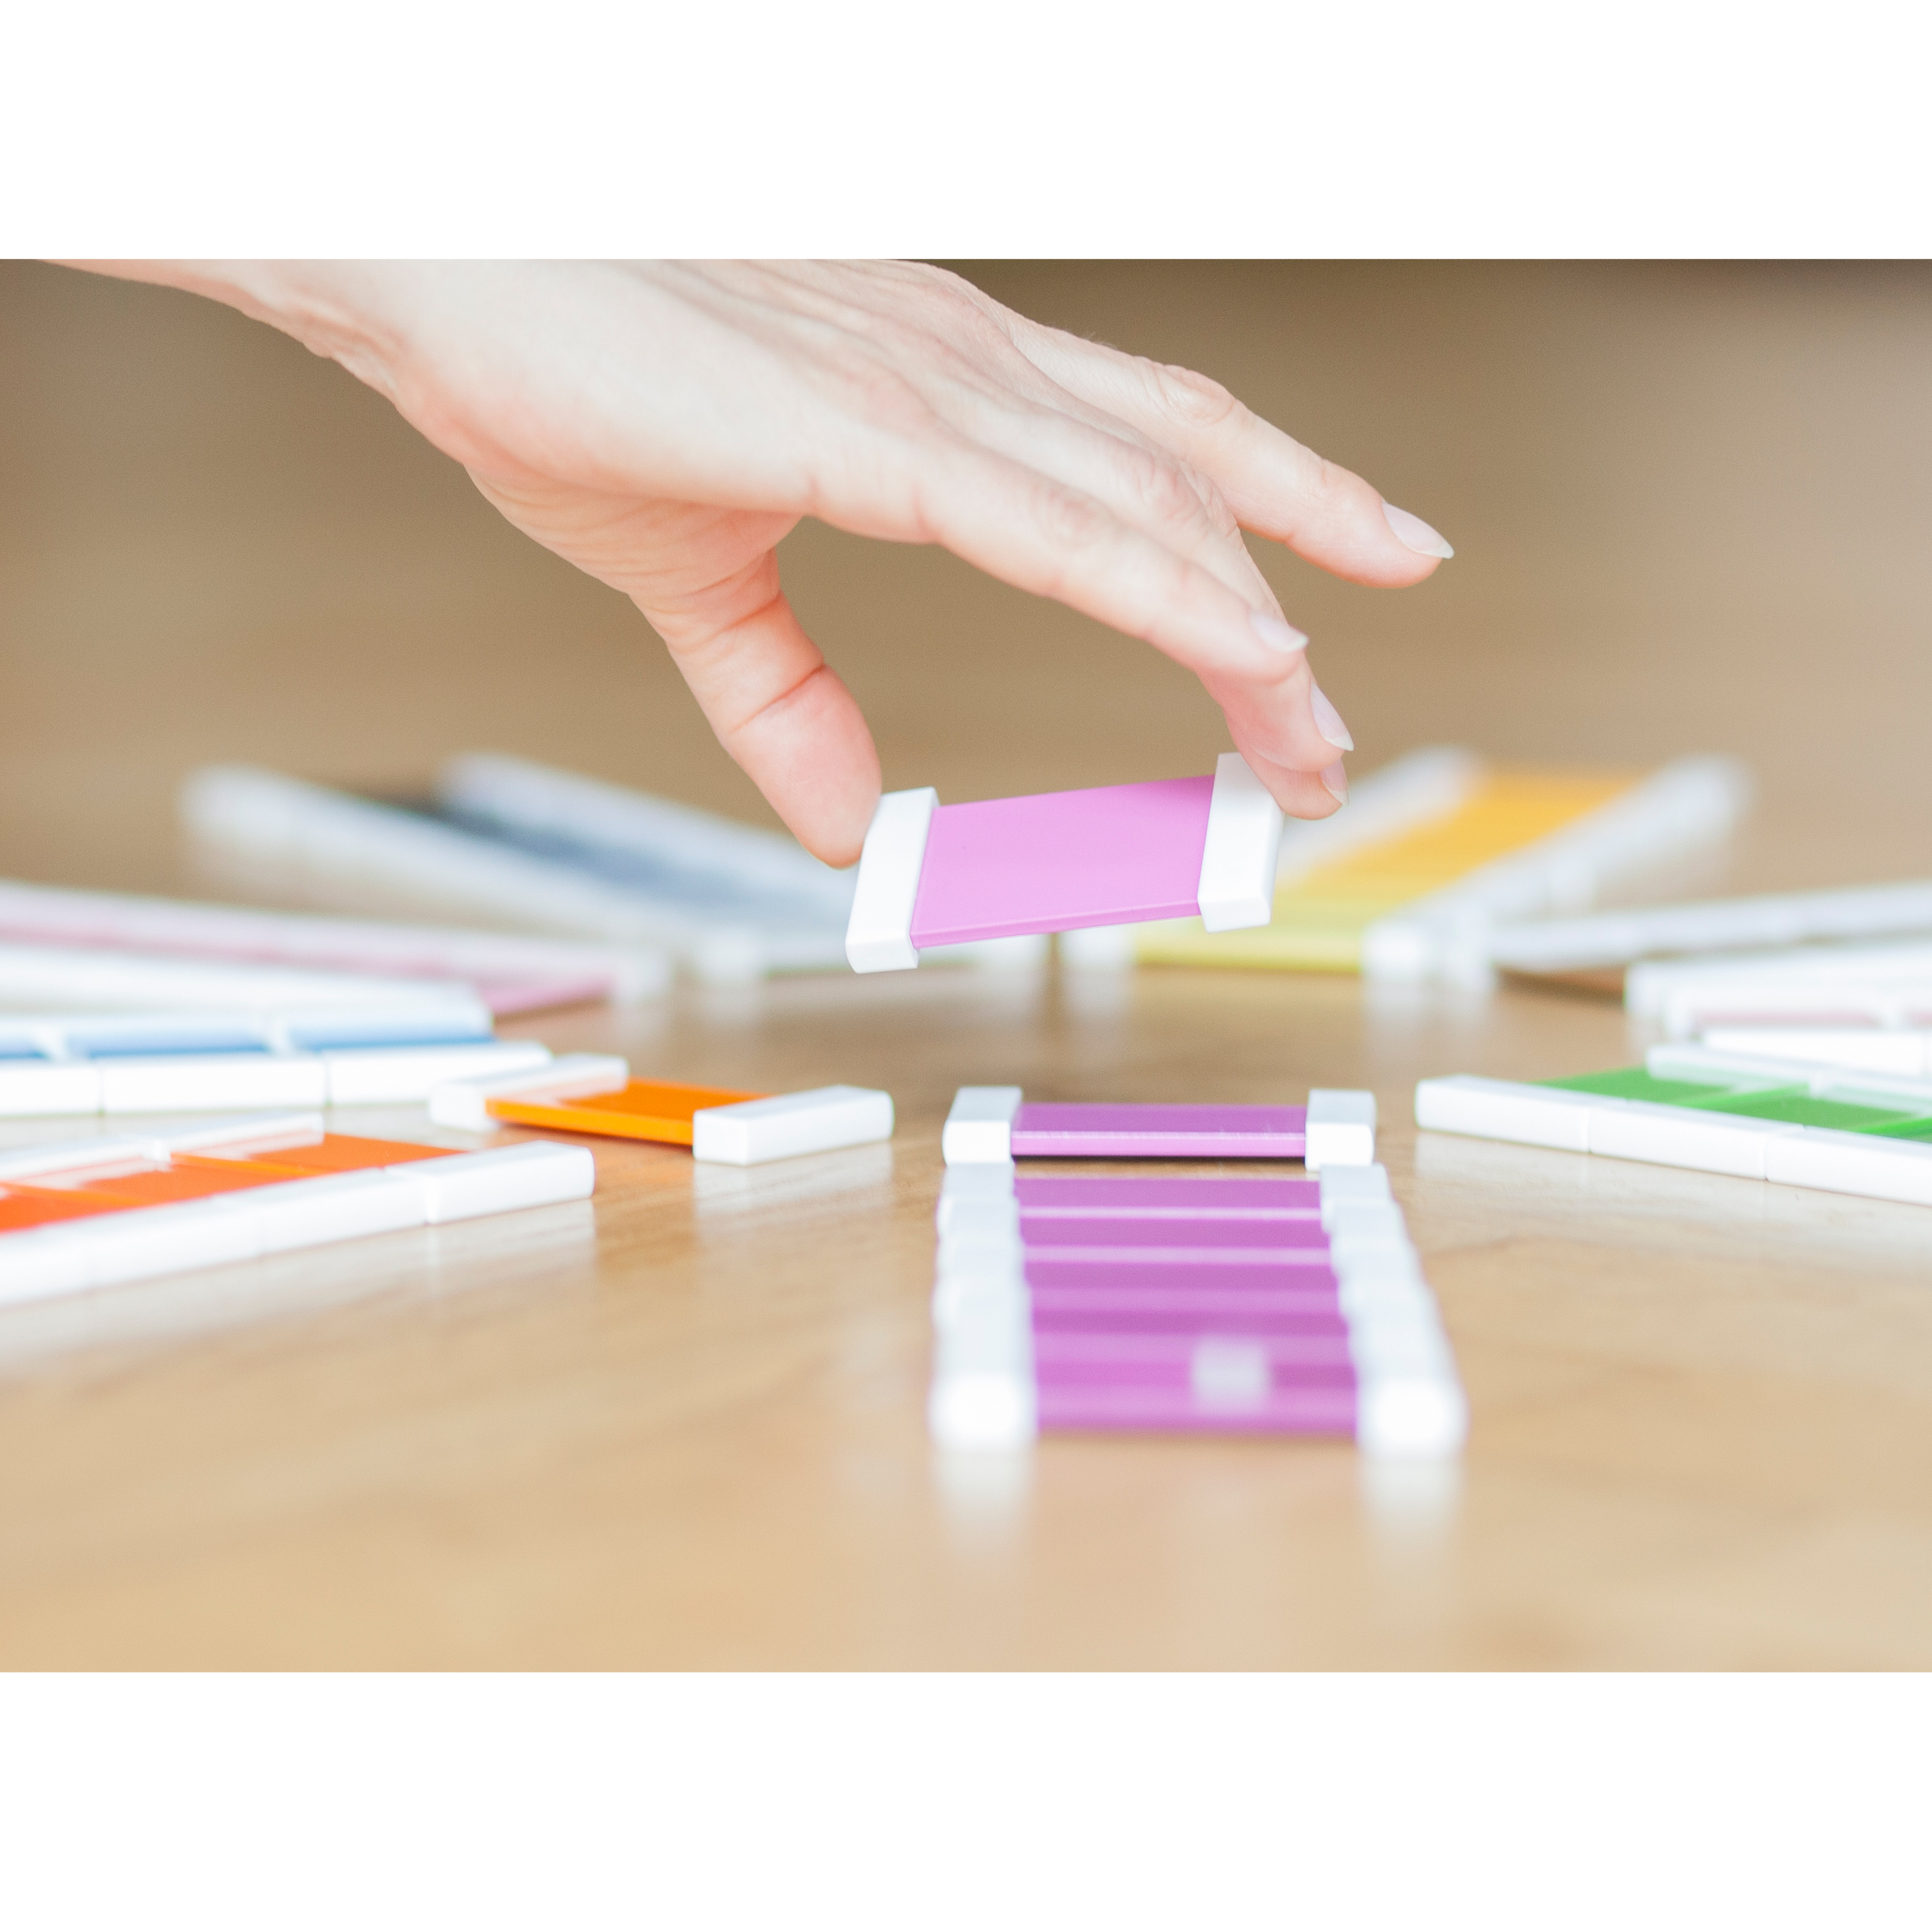 Farbtäfelchen - Schattierungskasten mit 9 Farben